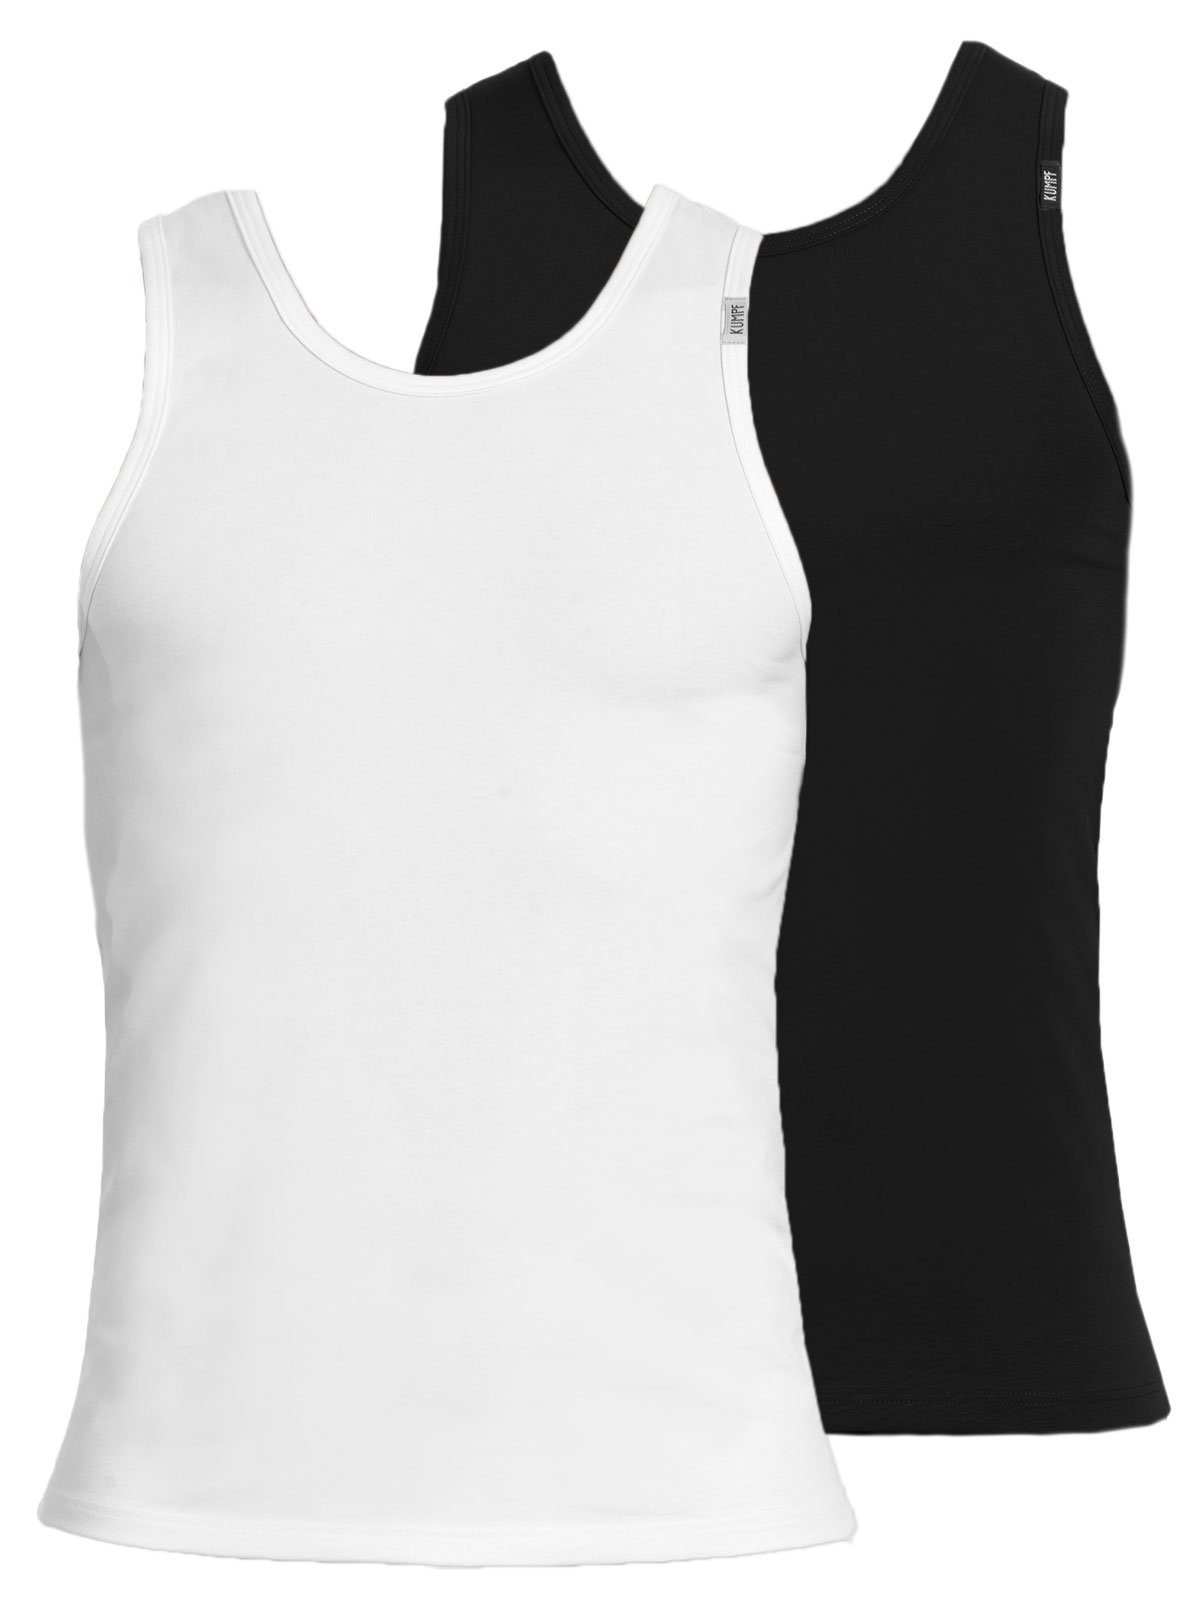 KUMPF Achselhemd 2er Sparpack Herren Unterhemd Bio Cotton (Spar-Set, 2-St) hohe Markenqualität schwarz weiss